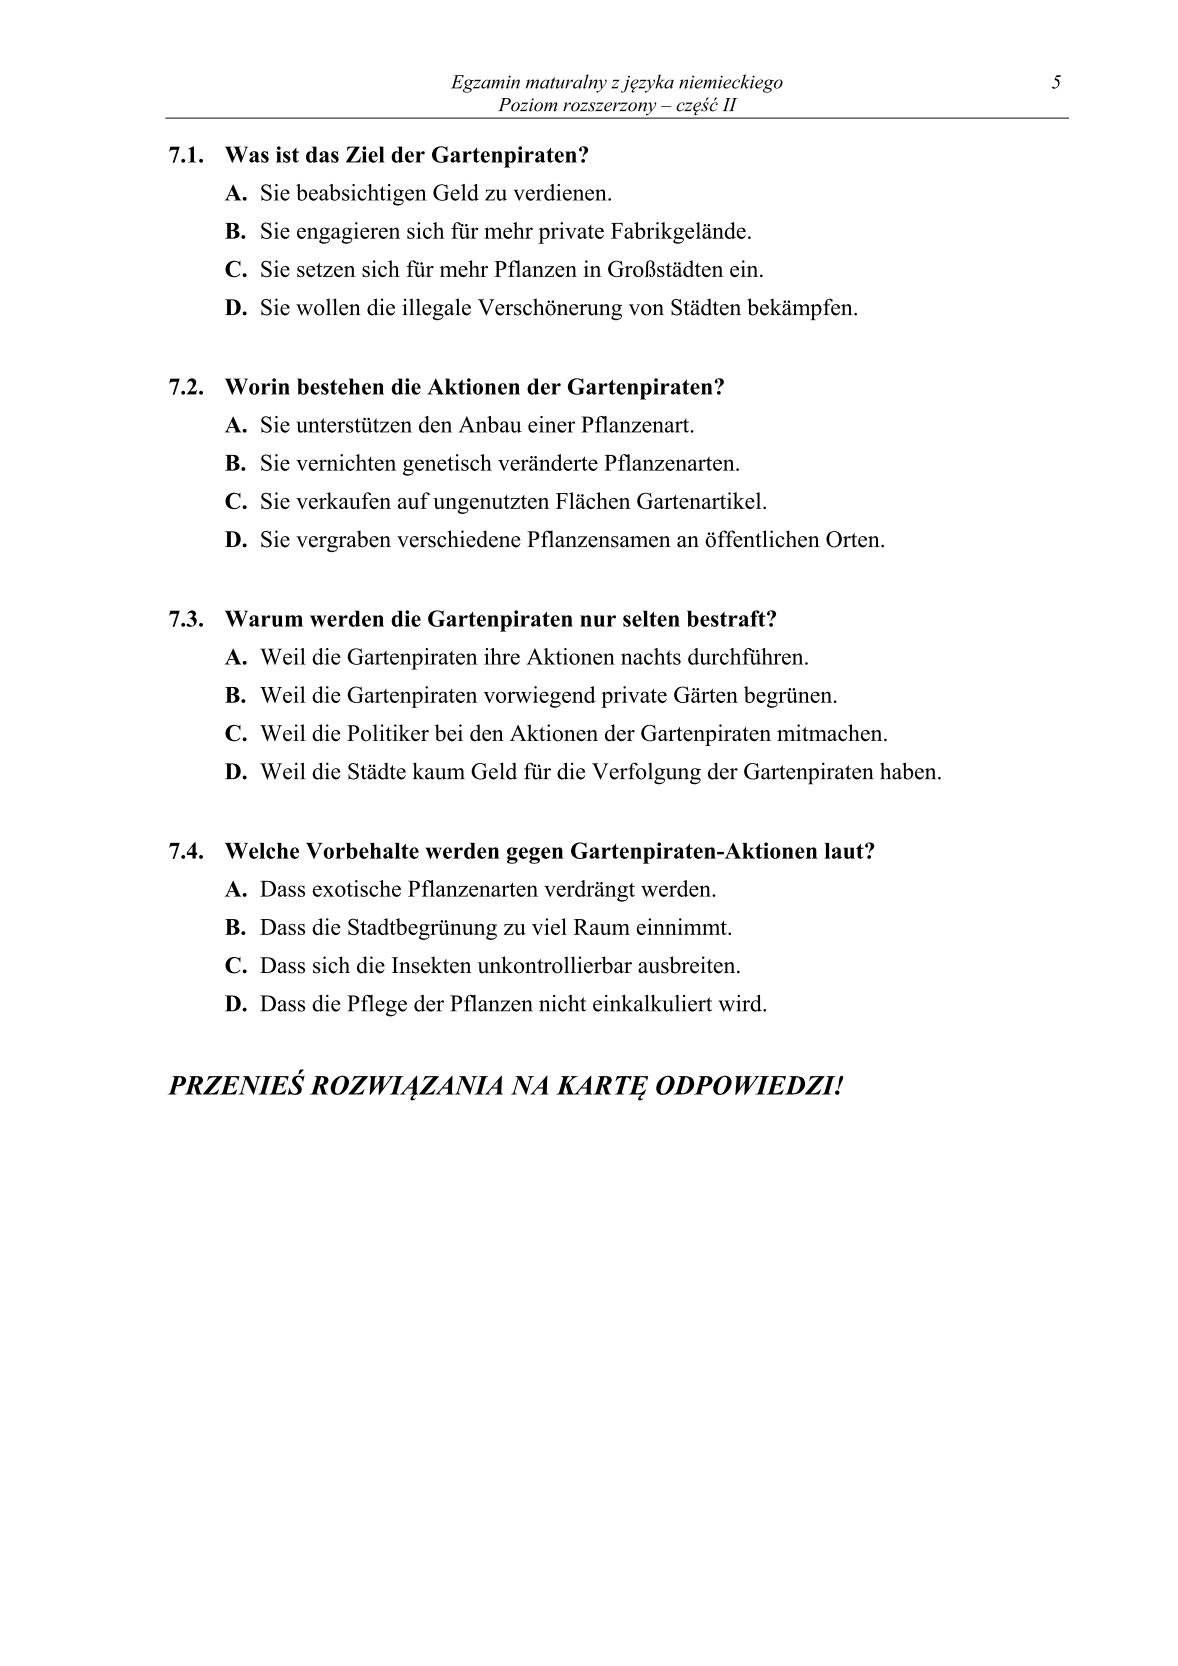 pytania-jezyk-niemiecki-poziom-rozszerzony-czesc-II-matura-2014-str.5